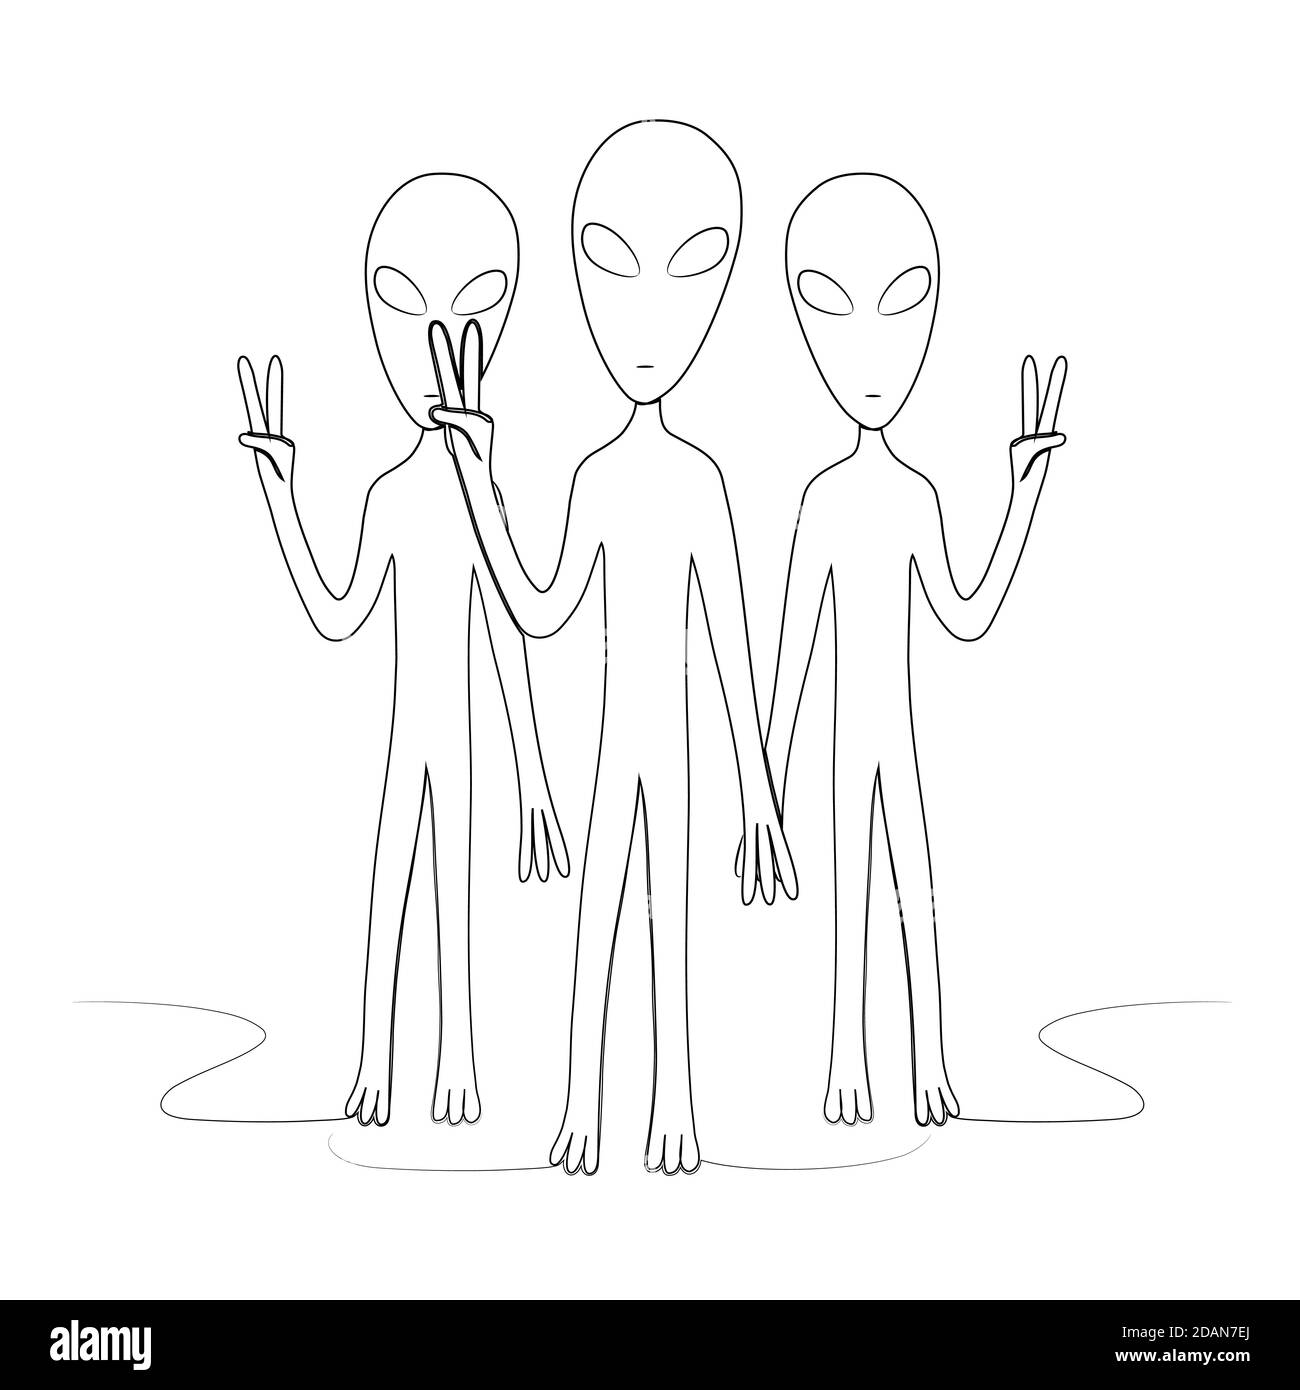 Eine Gruppe von Aliens zeigt ein Friedenszeichen. Isolierte Vektorgrafik für Rohware. Stock Vektor